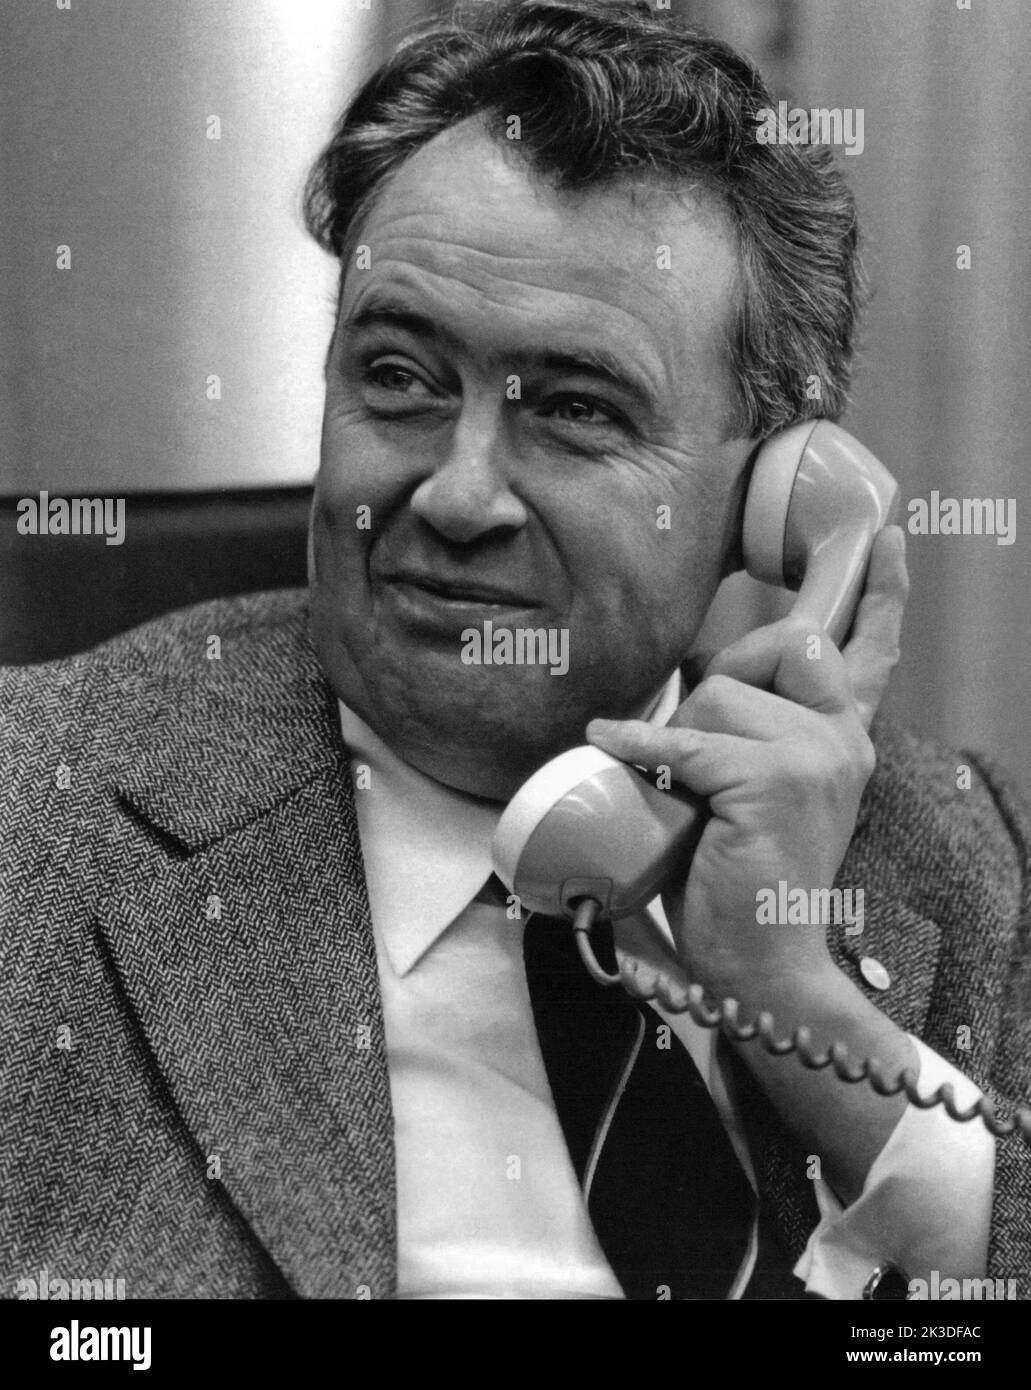 Deutscher Ökonom und Politiker Hans Eberhard Apel, 1980er Jahre - Fotobuch Band 1 von 2012: PROmi- Porträts fotografiert von Hartwig 'Valdi' Valdmanis Foto Stock